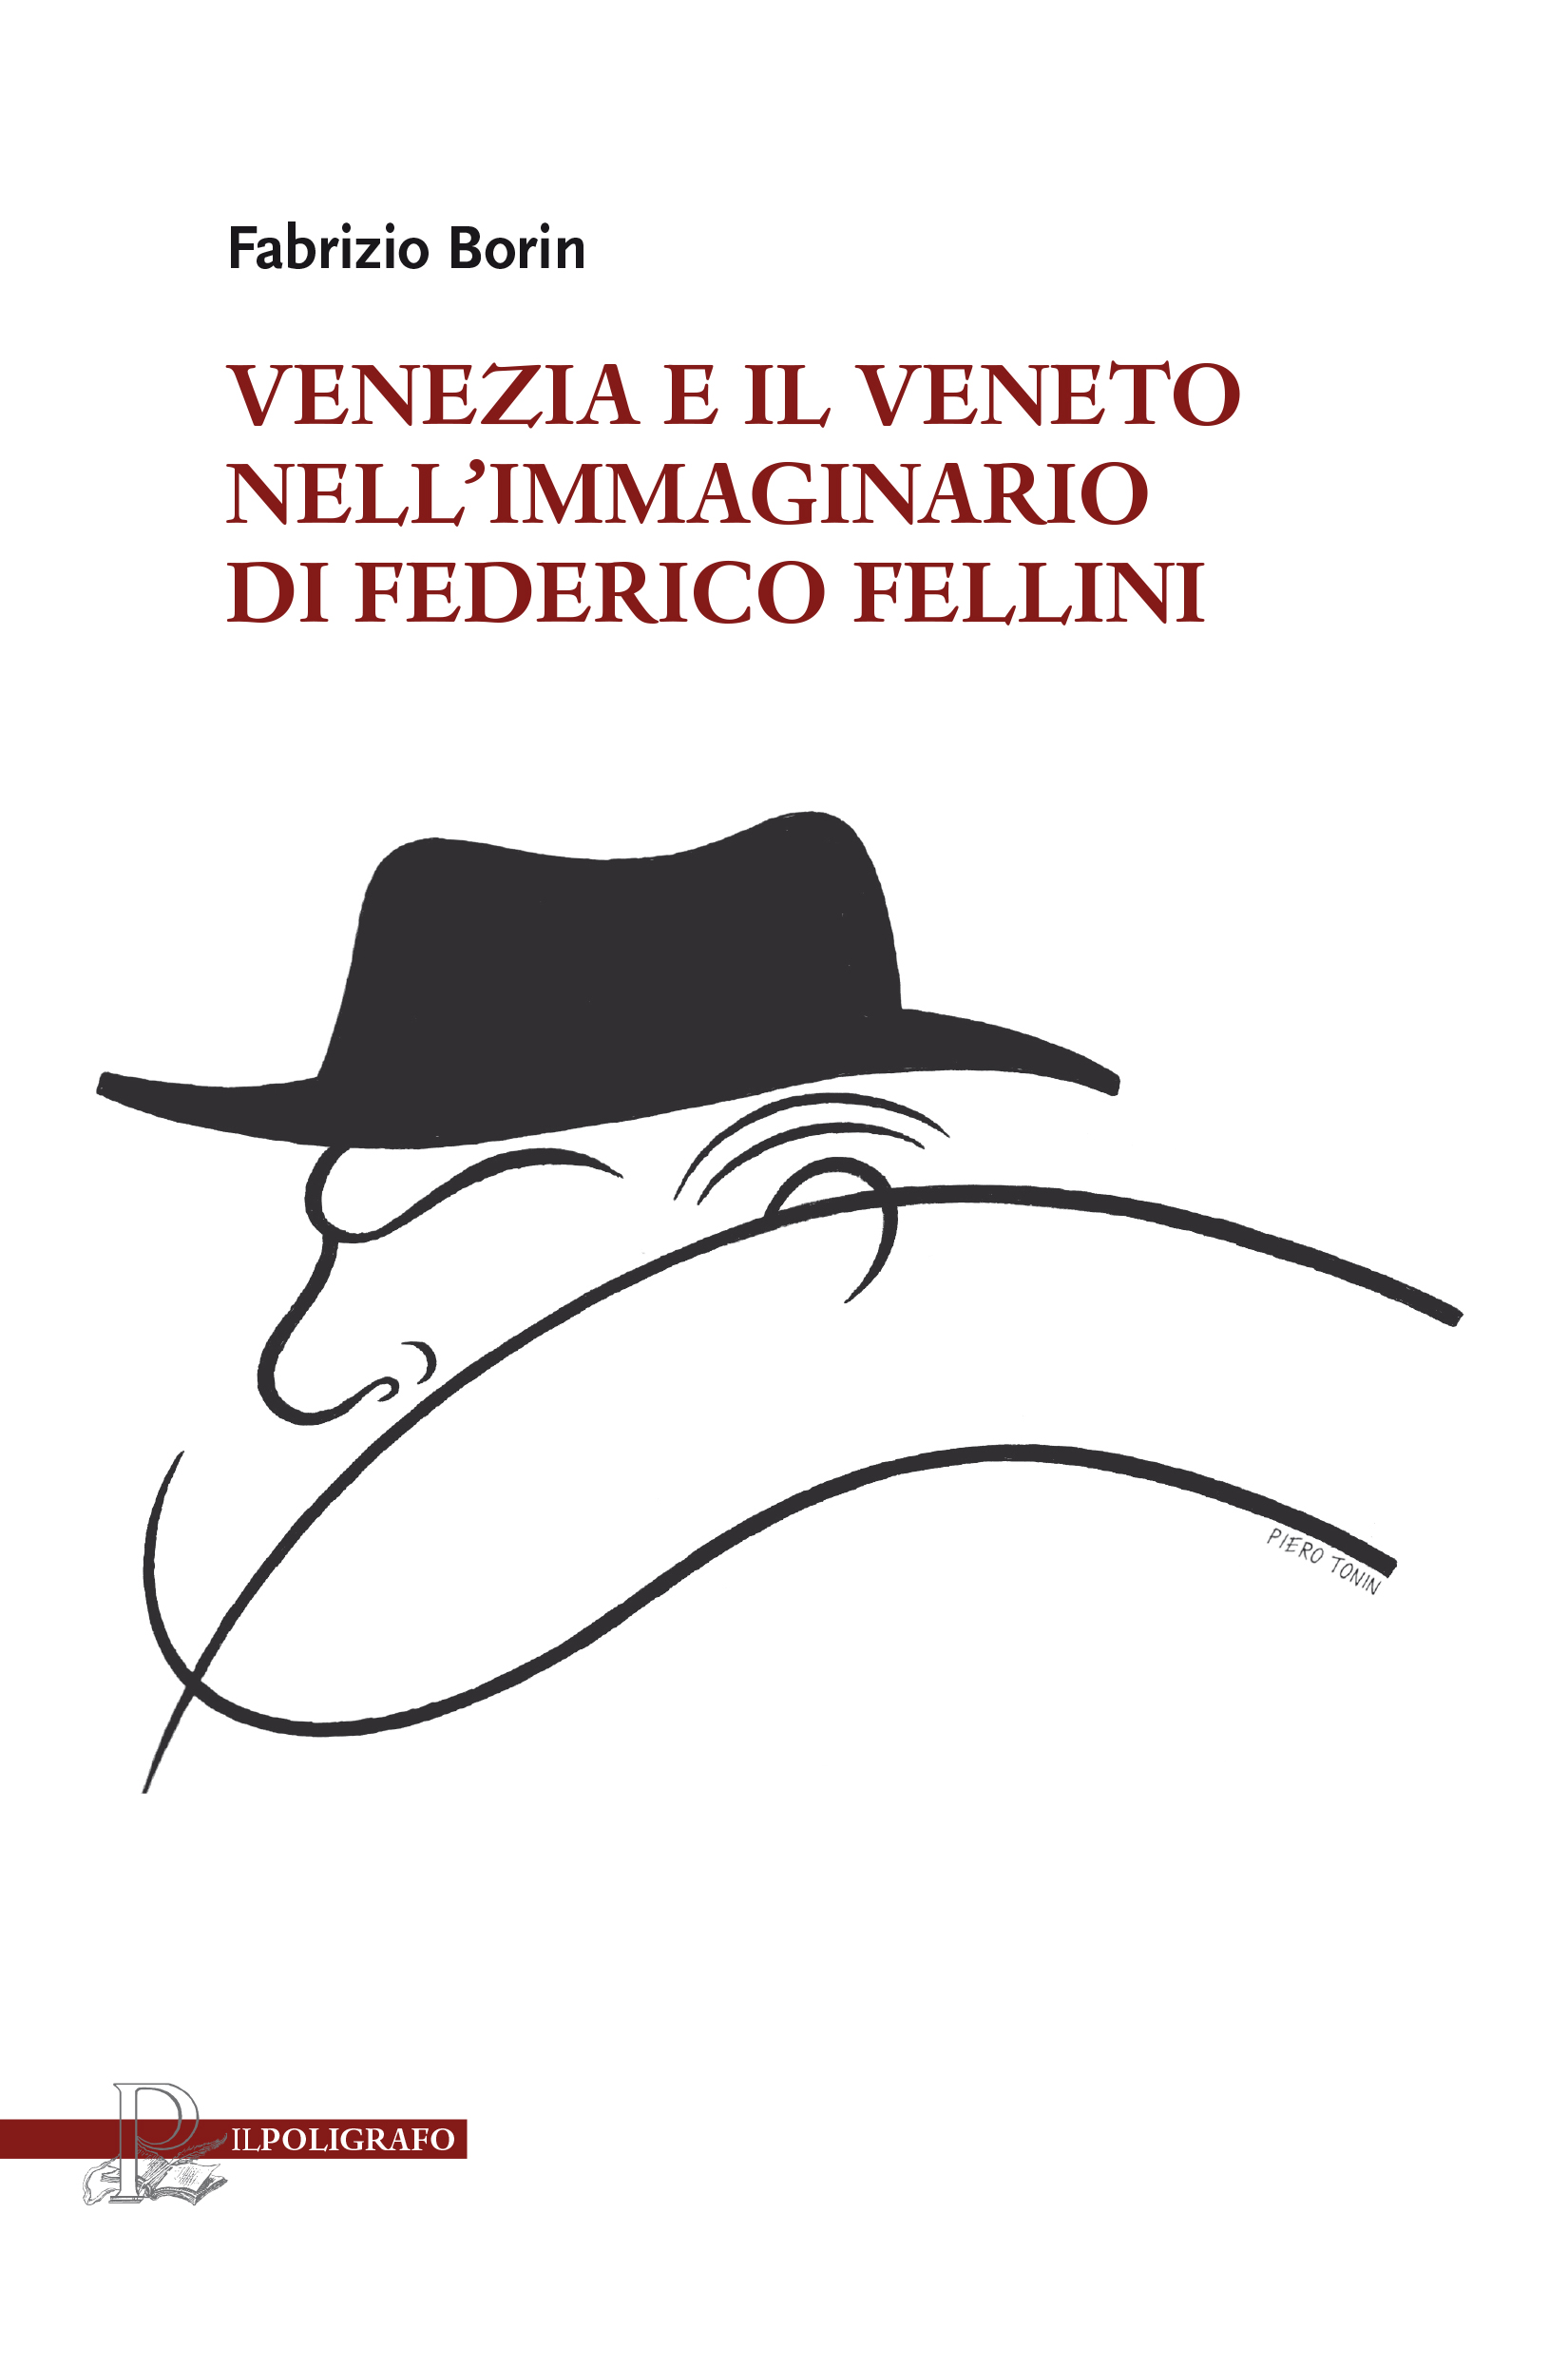 Borin, Fellini, Venezia